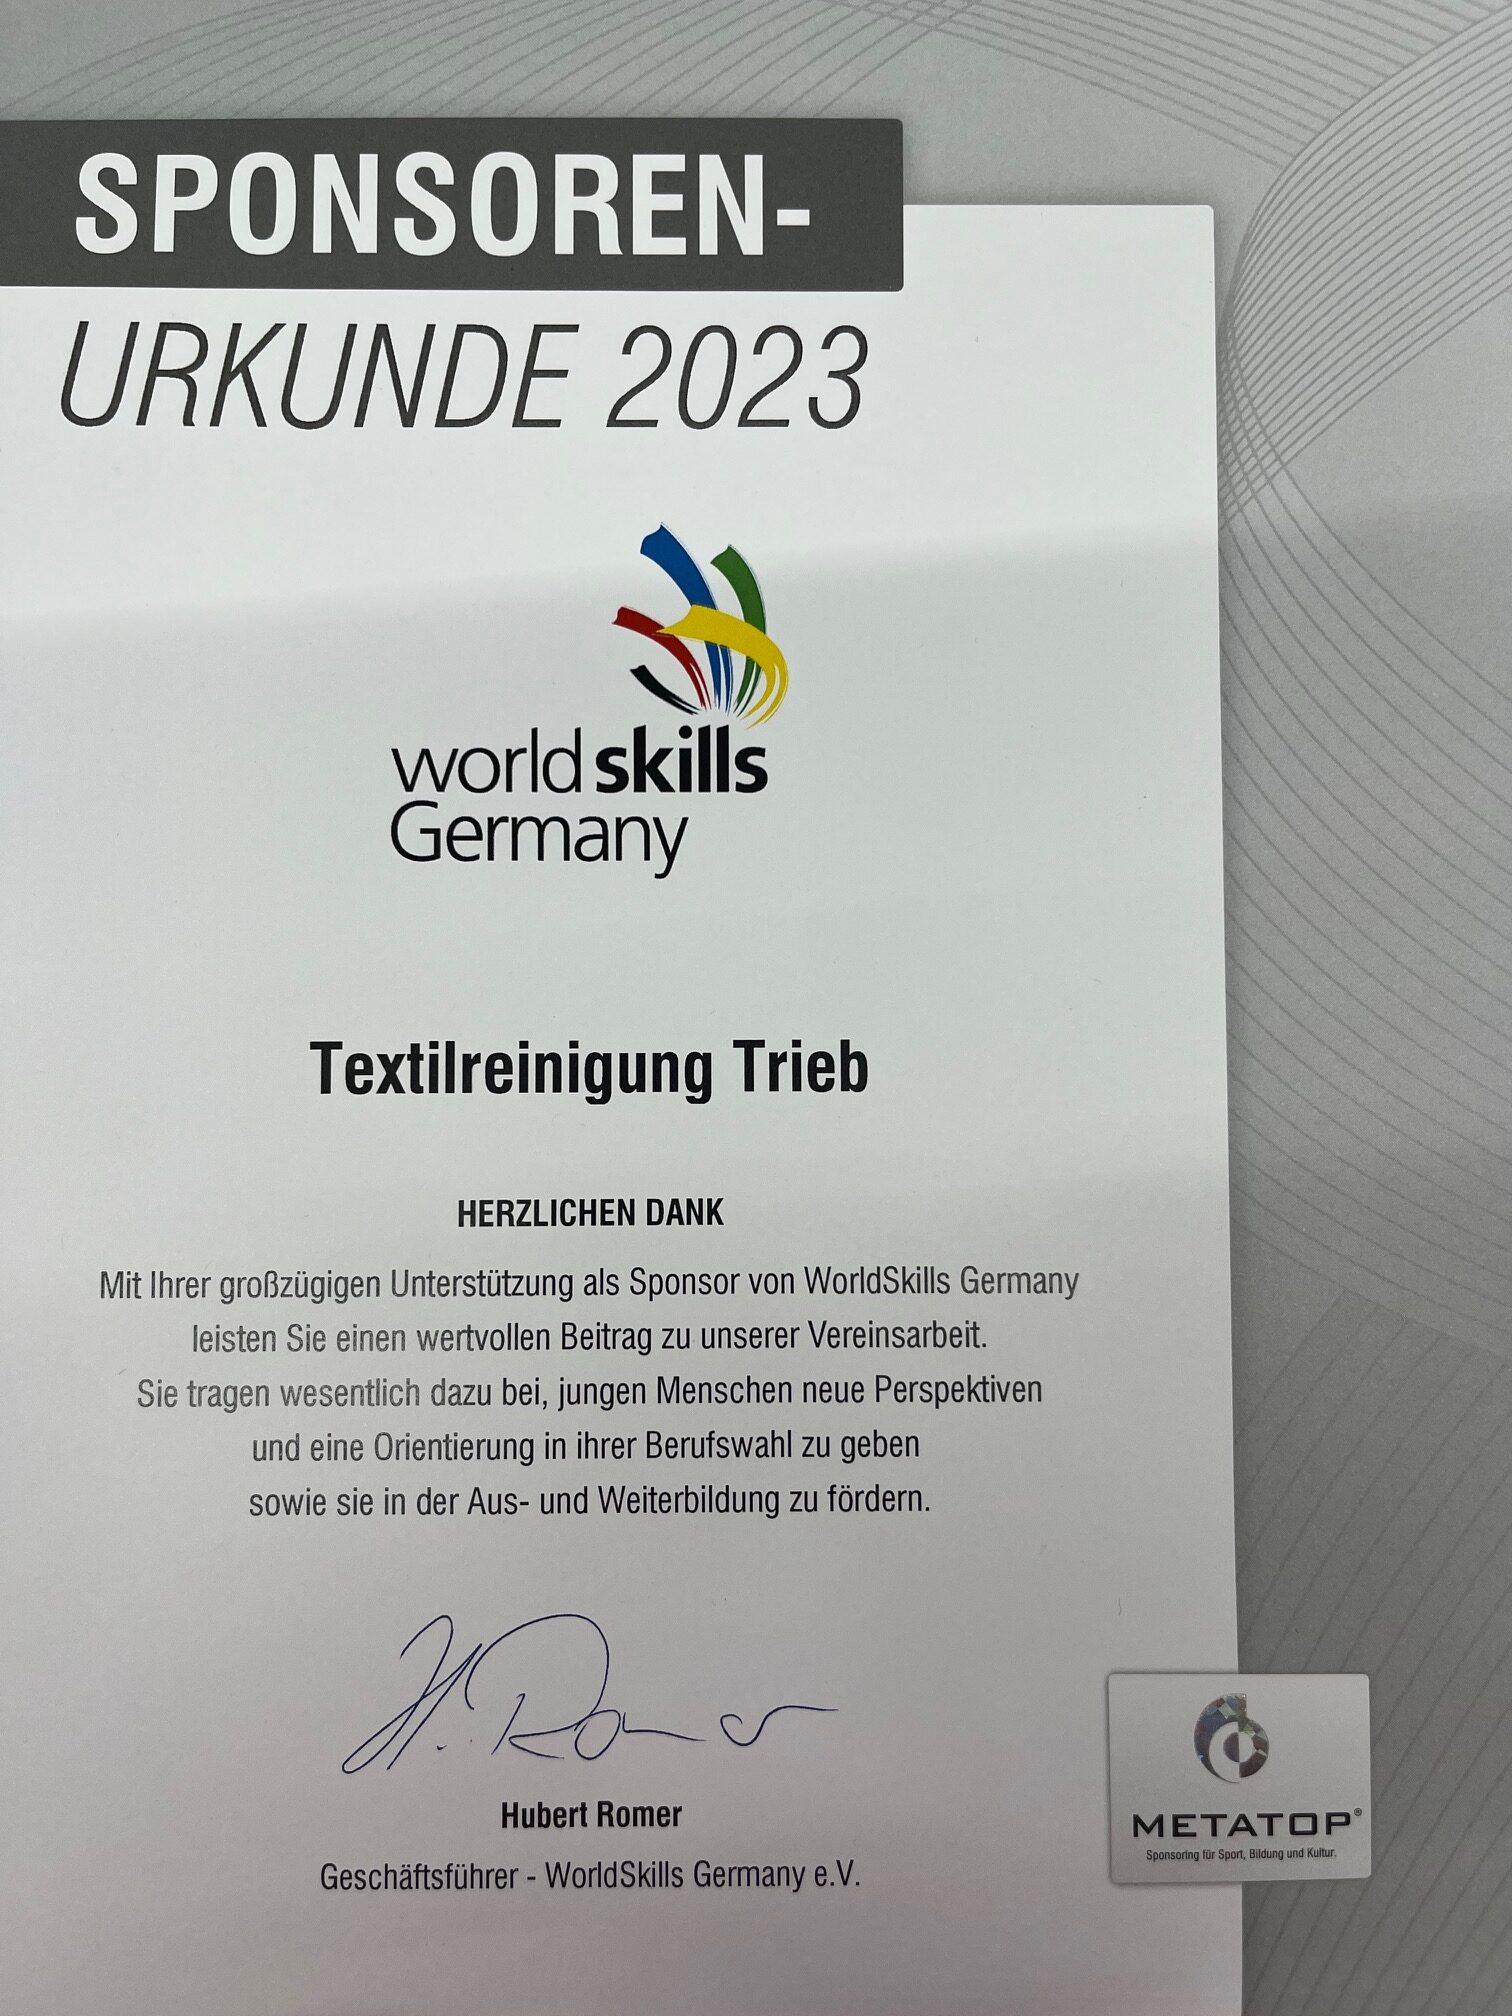 Wir unterstützen WorldSkills Germany